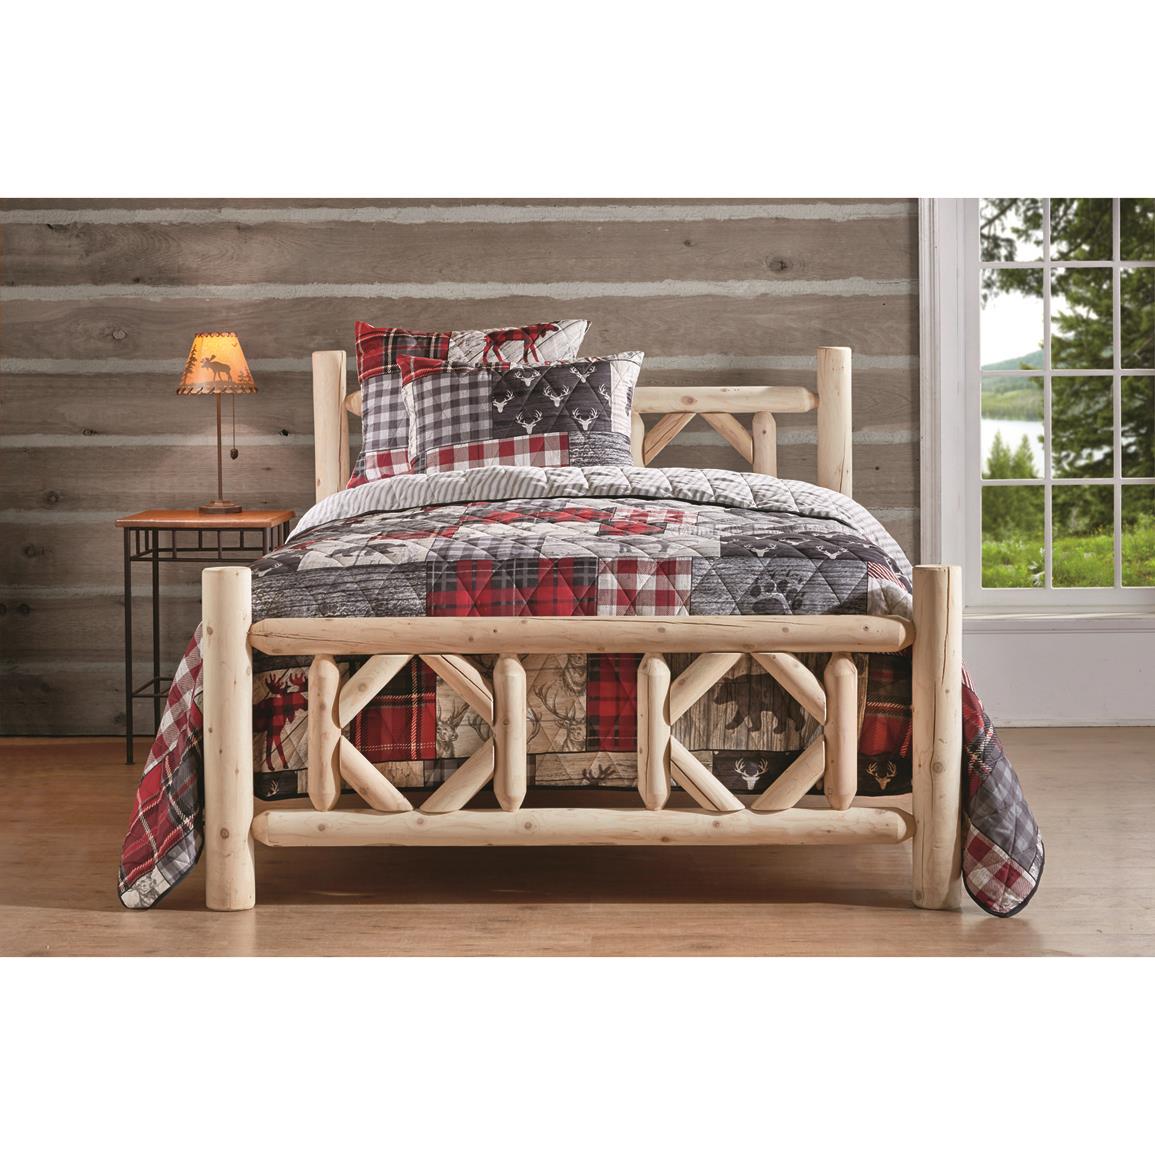 Castlecreek Diamond Cedar Log Bed Twin, Twin Log Bed